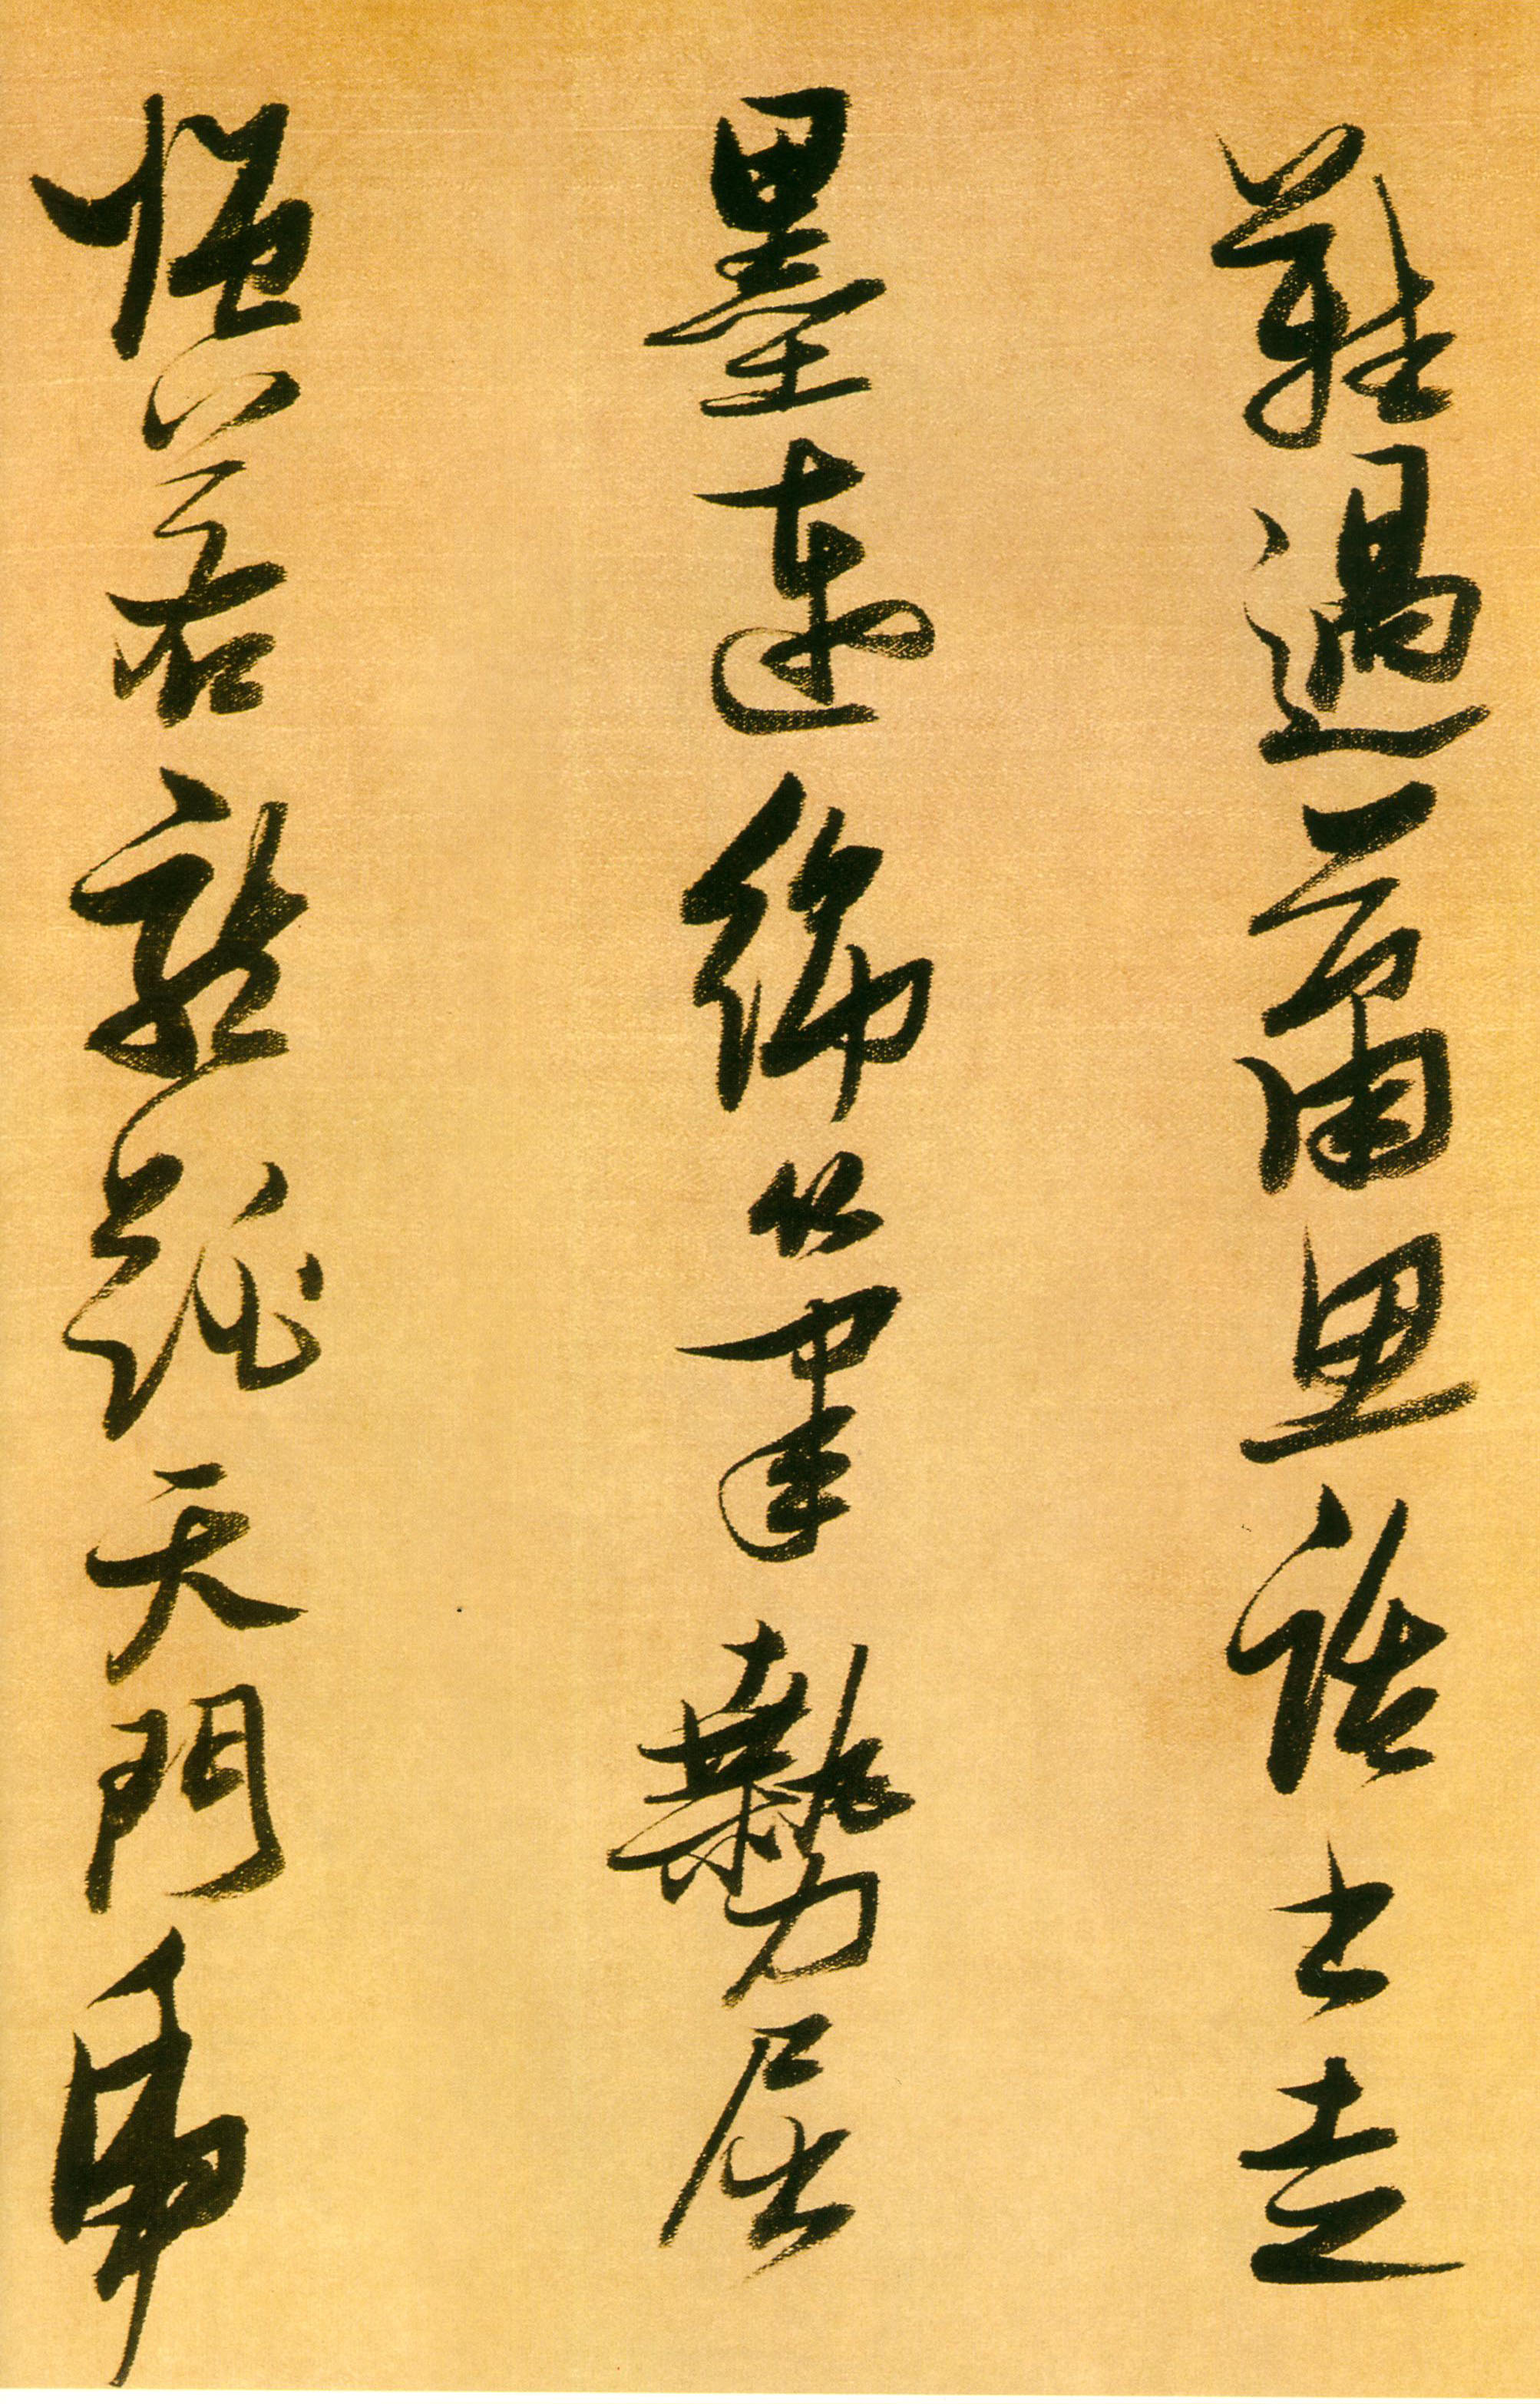 张瑞图《行书论书卷》-安徽省博物馆藏 (图11)